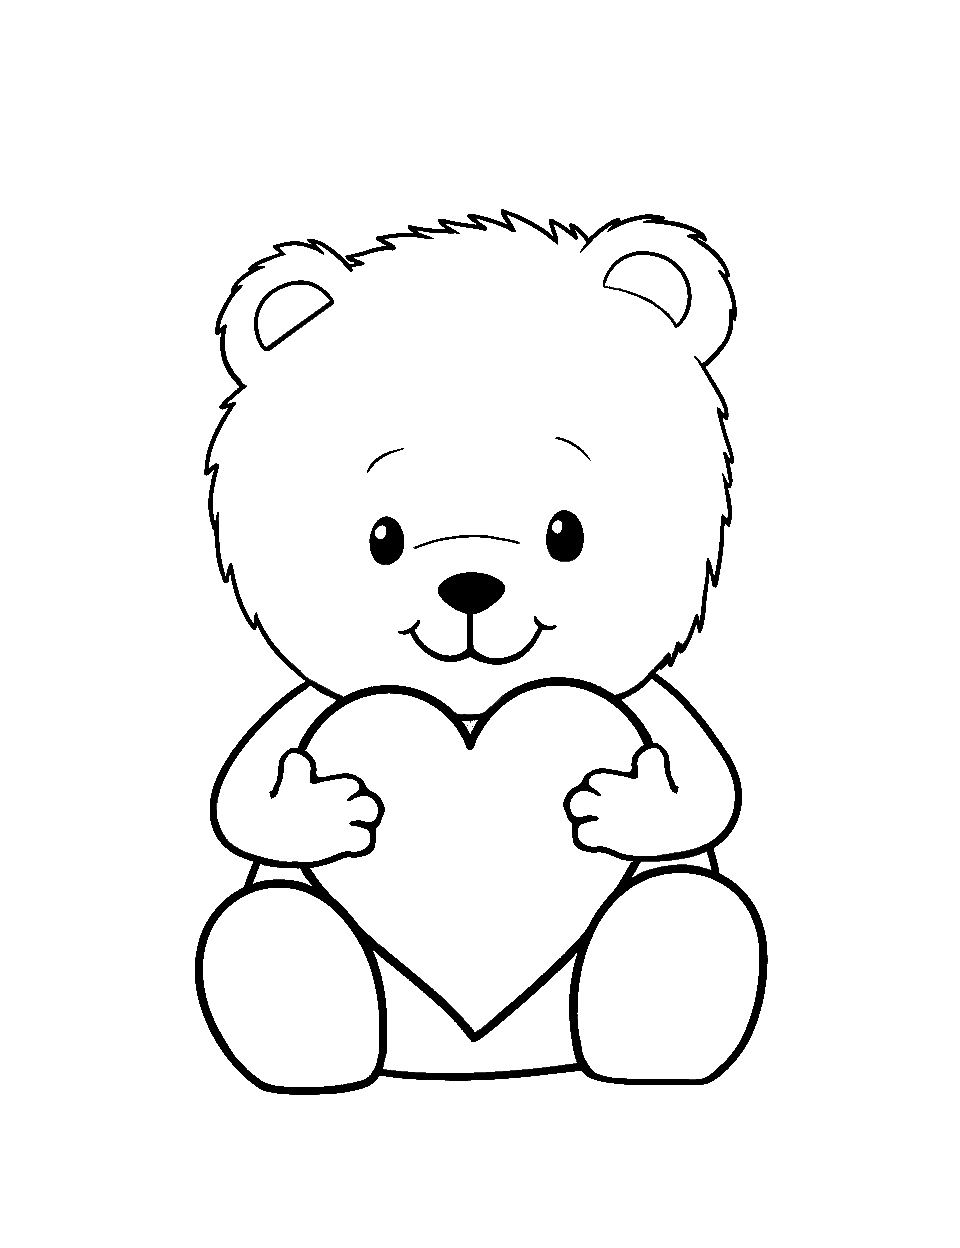 Teddy Bear Hug Coloring Page - A fluffy teddy bear holding a heart cushion.